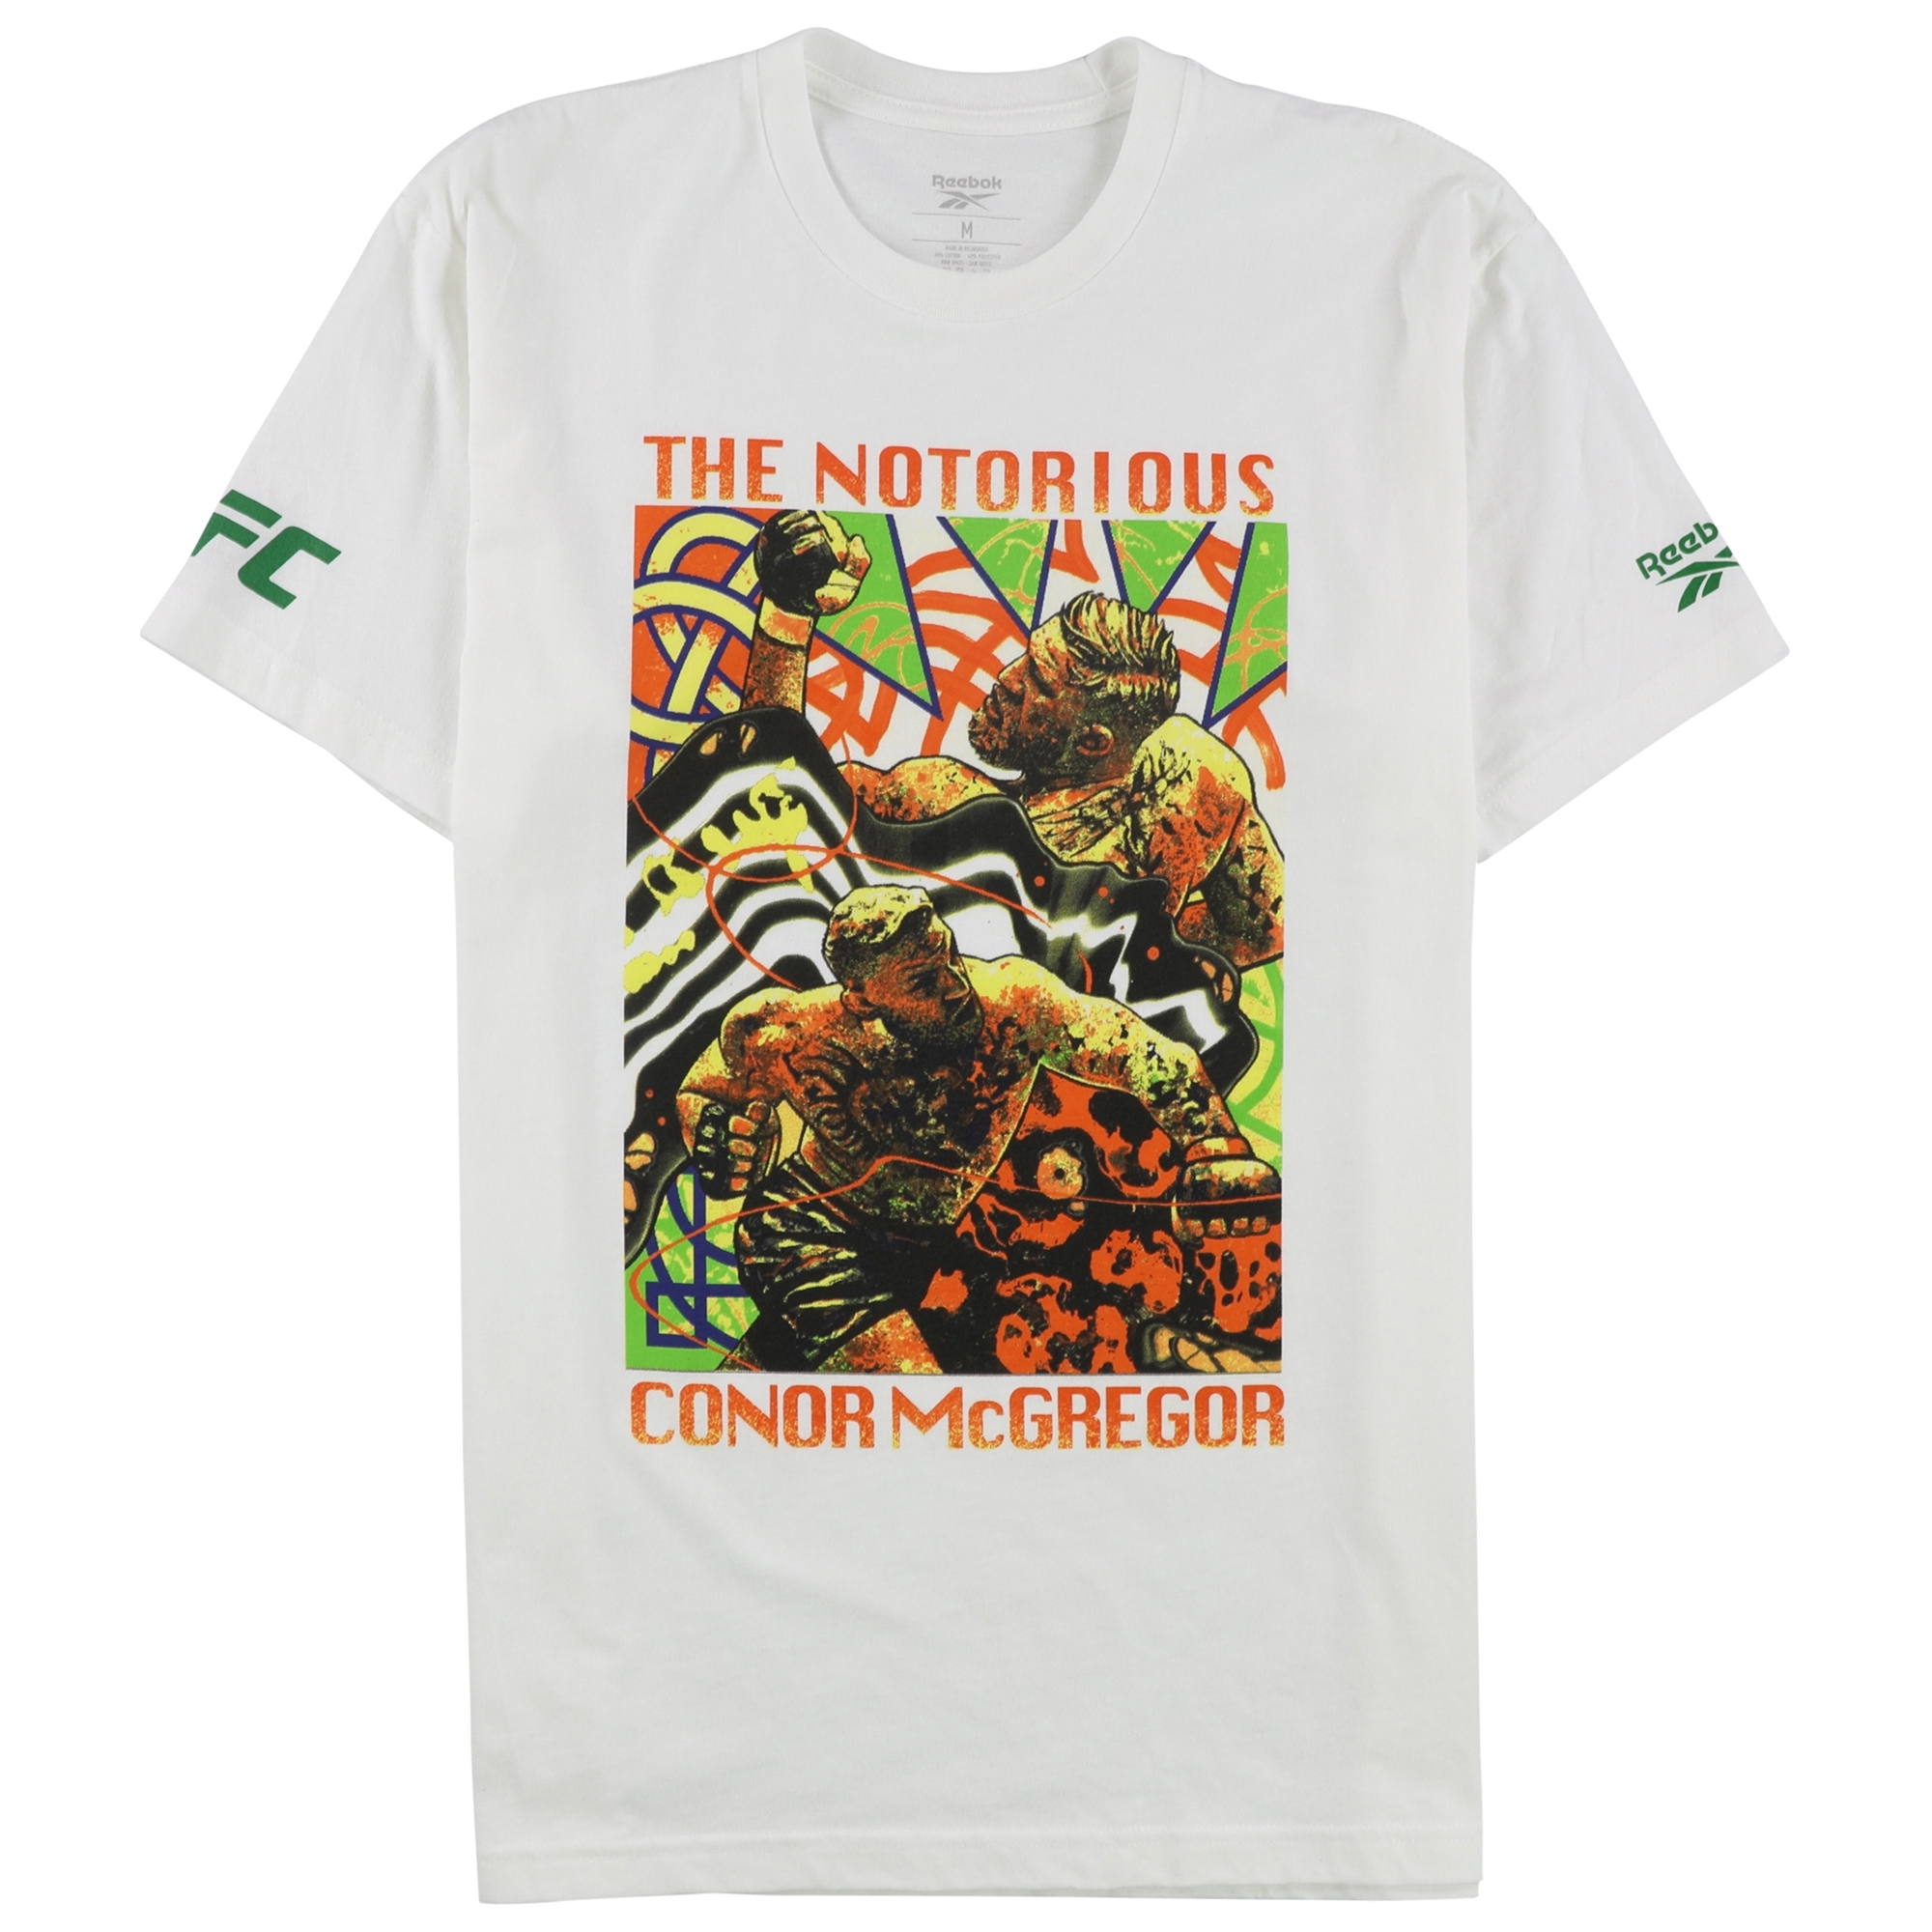 Desilusión Brutal Maldición Buy a Mens Reebok Notorious Conor McGregor Graphic T-Shirt Online |  TagsWeekly.com